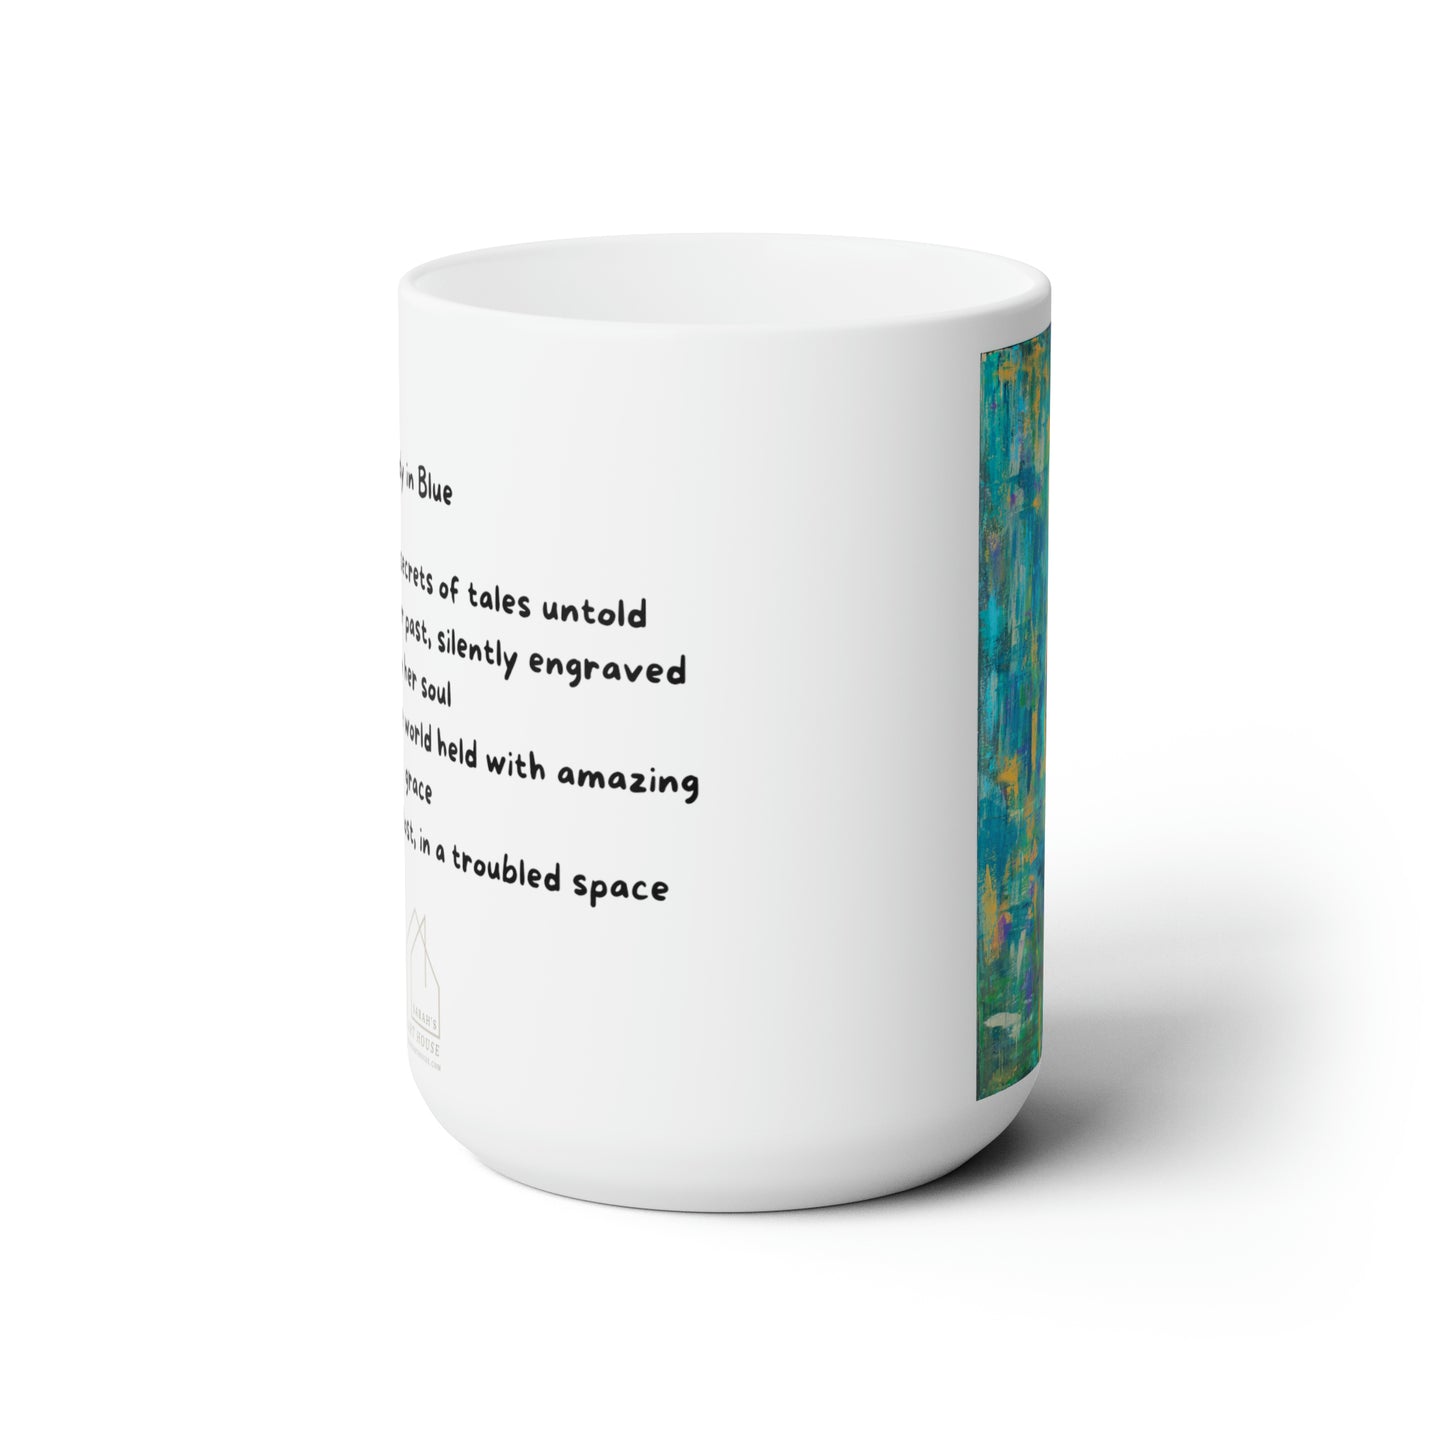 Lady in Blue - Ceramic Mug 15oz - Coffee Mug with Poem